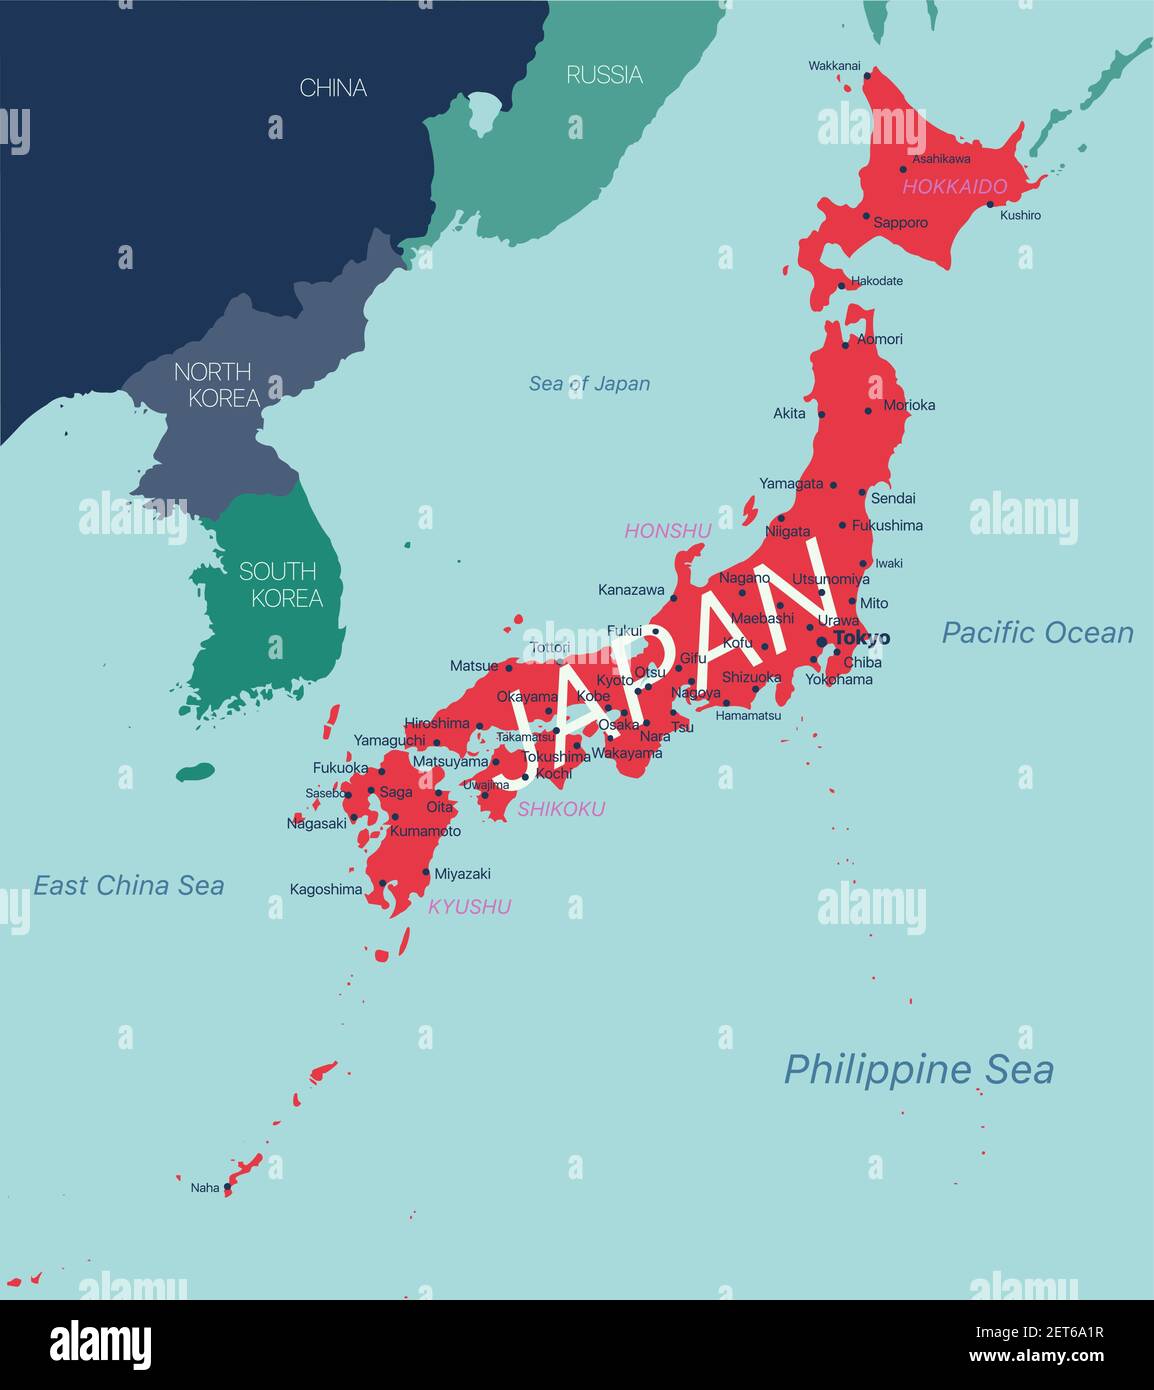 JAPON carte détaillée modifiable avec régions villes et sites géographiques. Fichier vectoriel EPS-10 Illustration de Vecteur